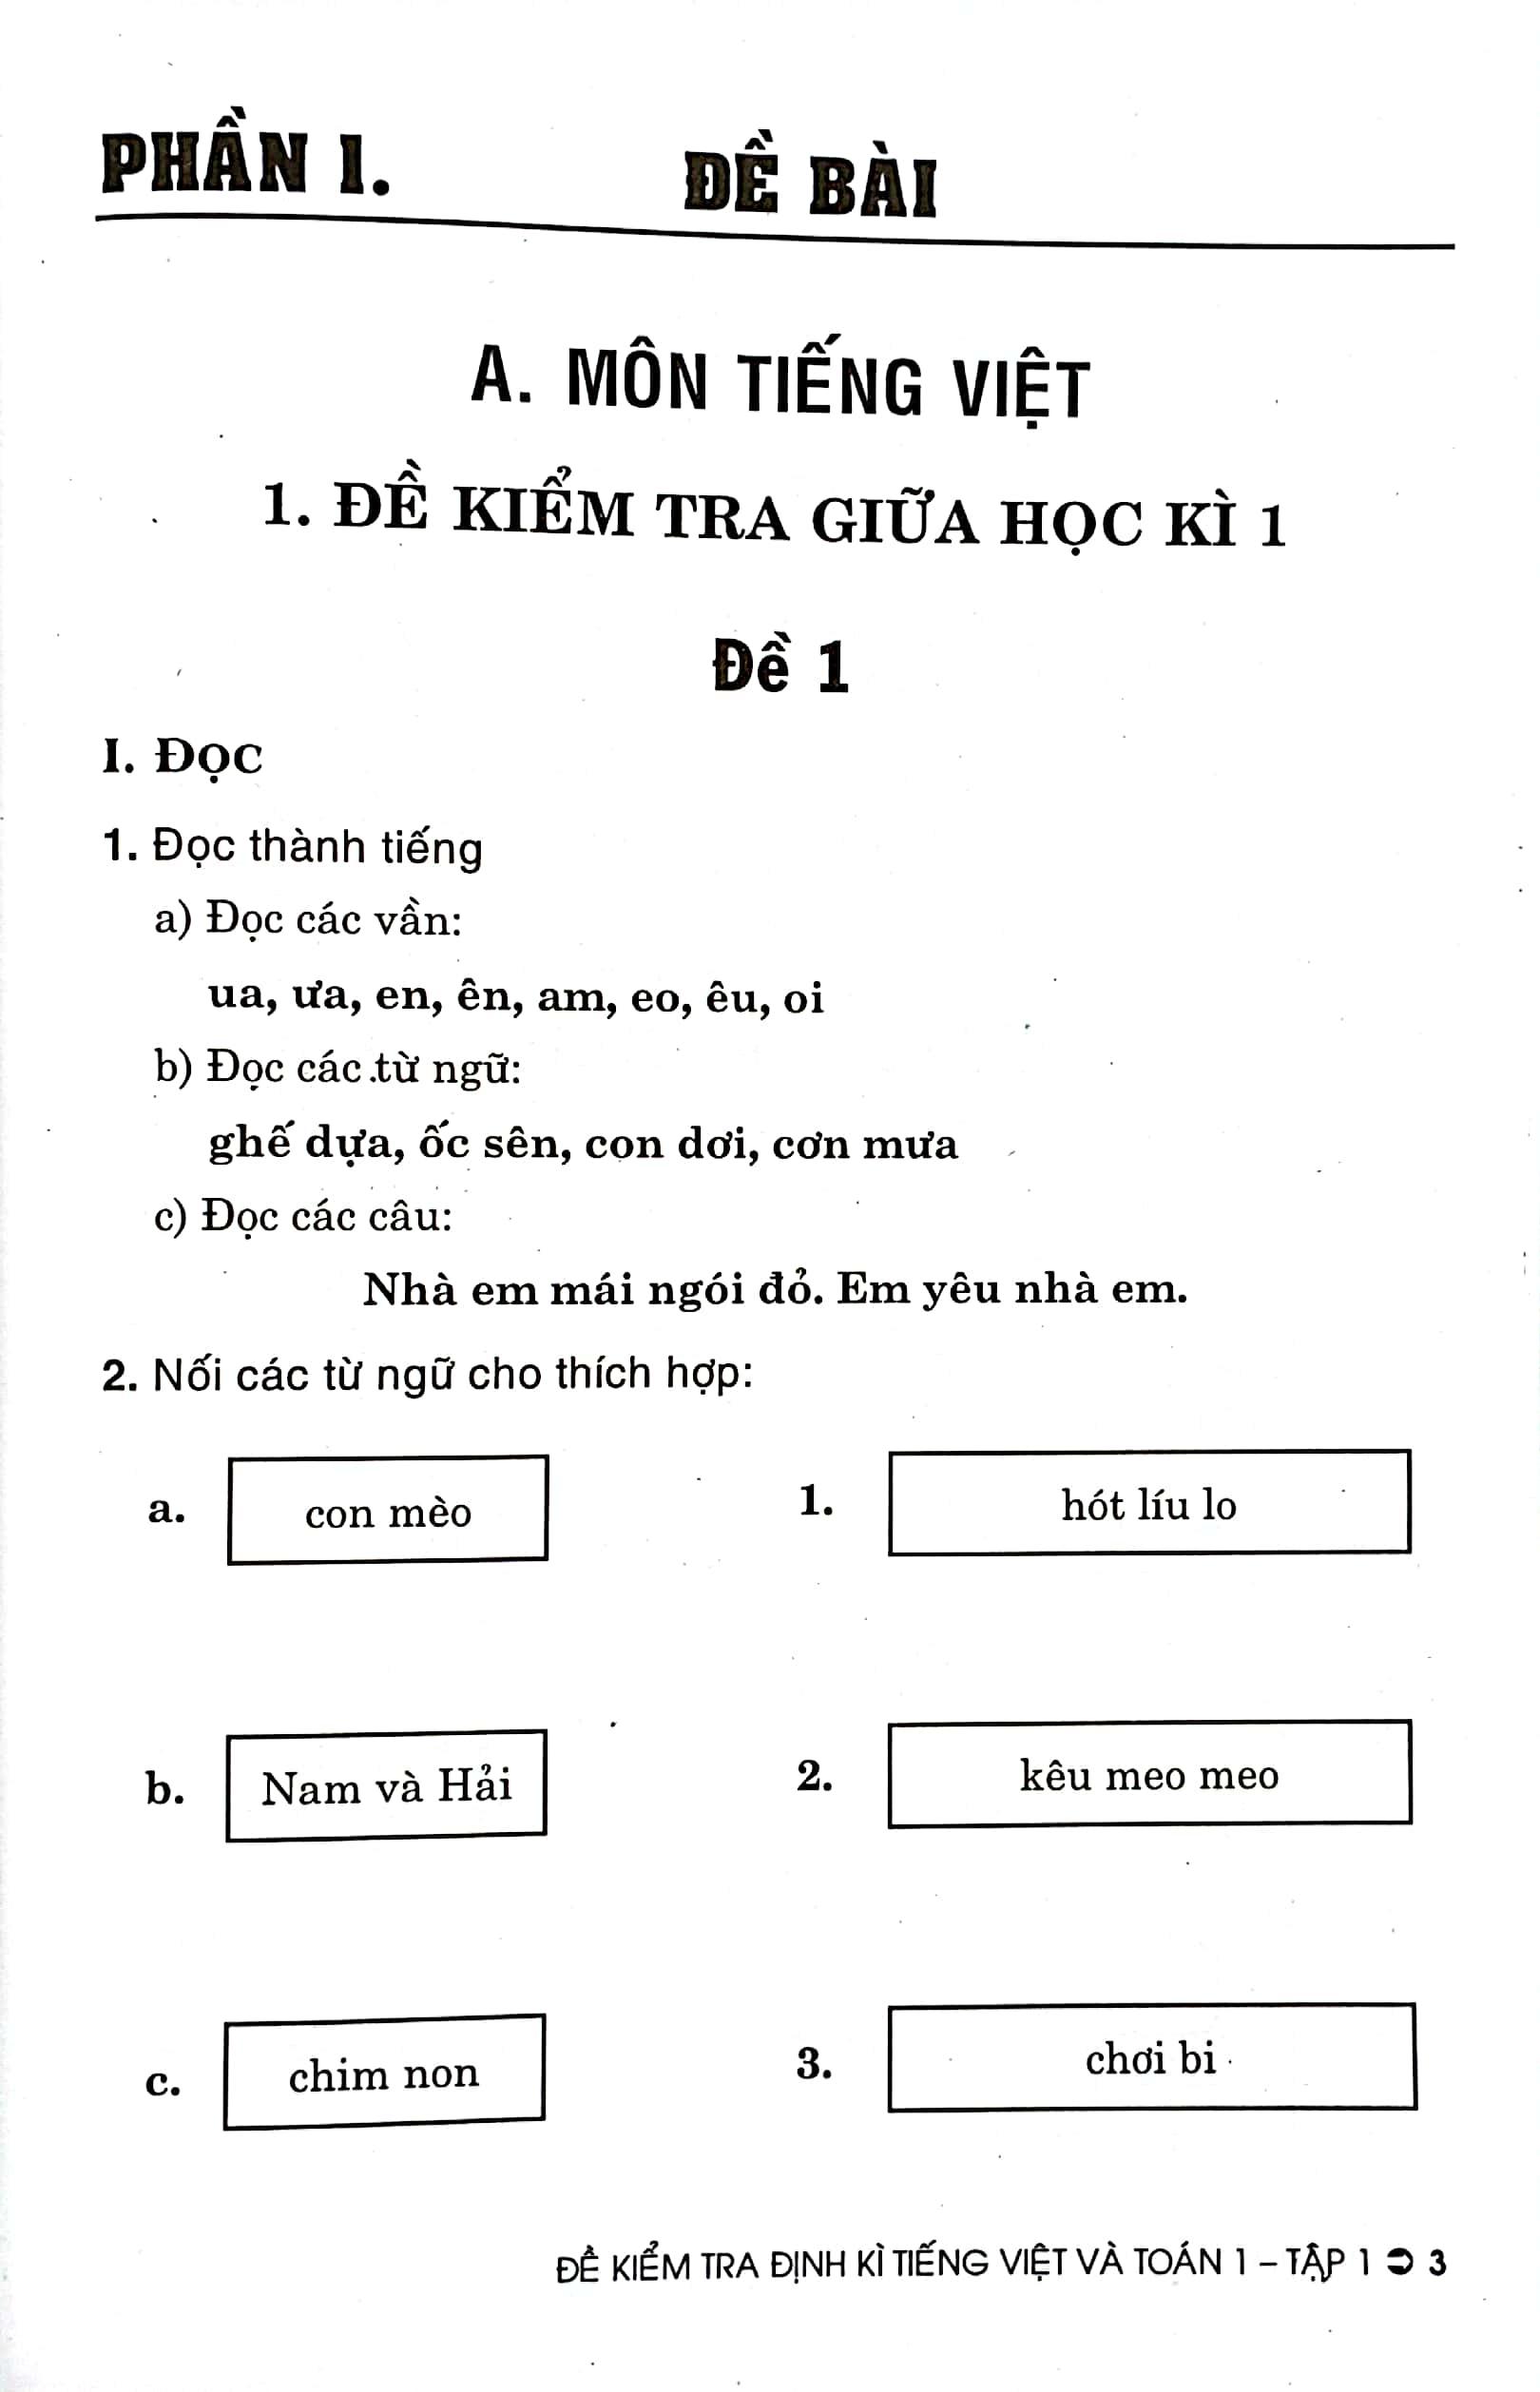 Đề Kiểm Tra Định Kì Tiếng Việt Và Toán 1 - Tập 1 (Theo Chương Trình Giáo Dục Phổ Thông Mới)